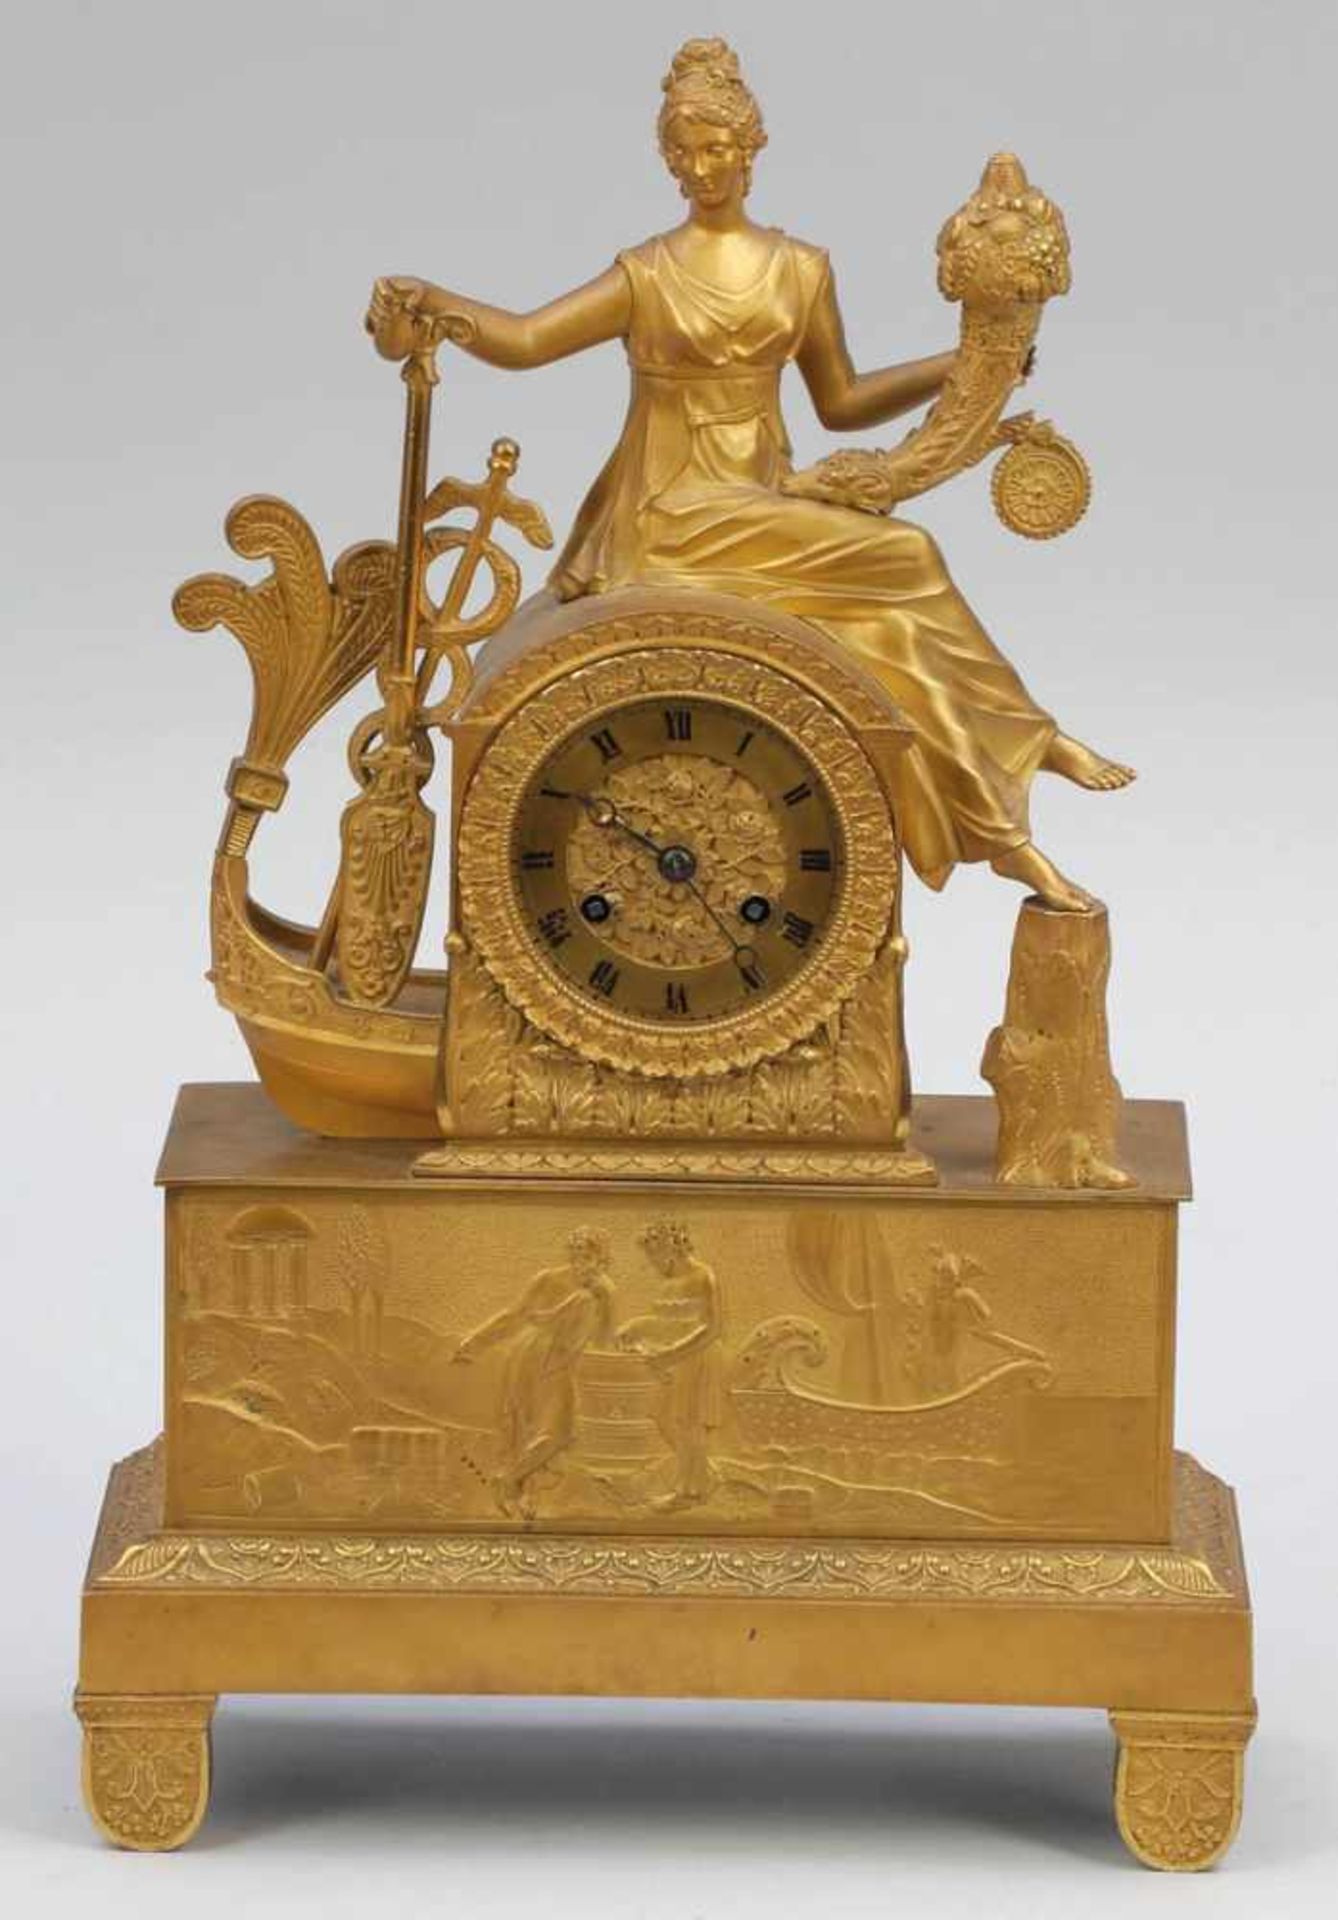 Empire-Pendule " Fortuna " Frankreich, um 1810. Bronze, vergoldet. 9 x 26 x 9 cm. Schlag auf Glocke.